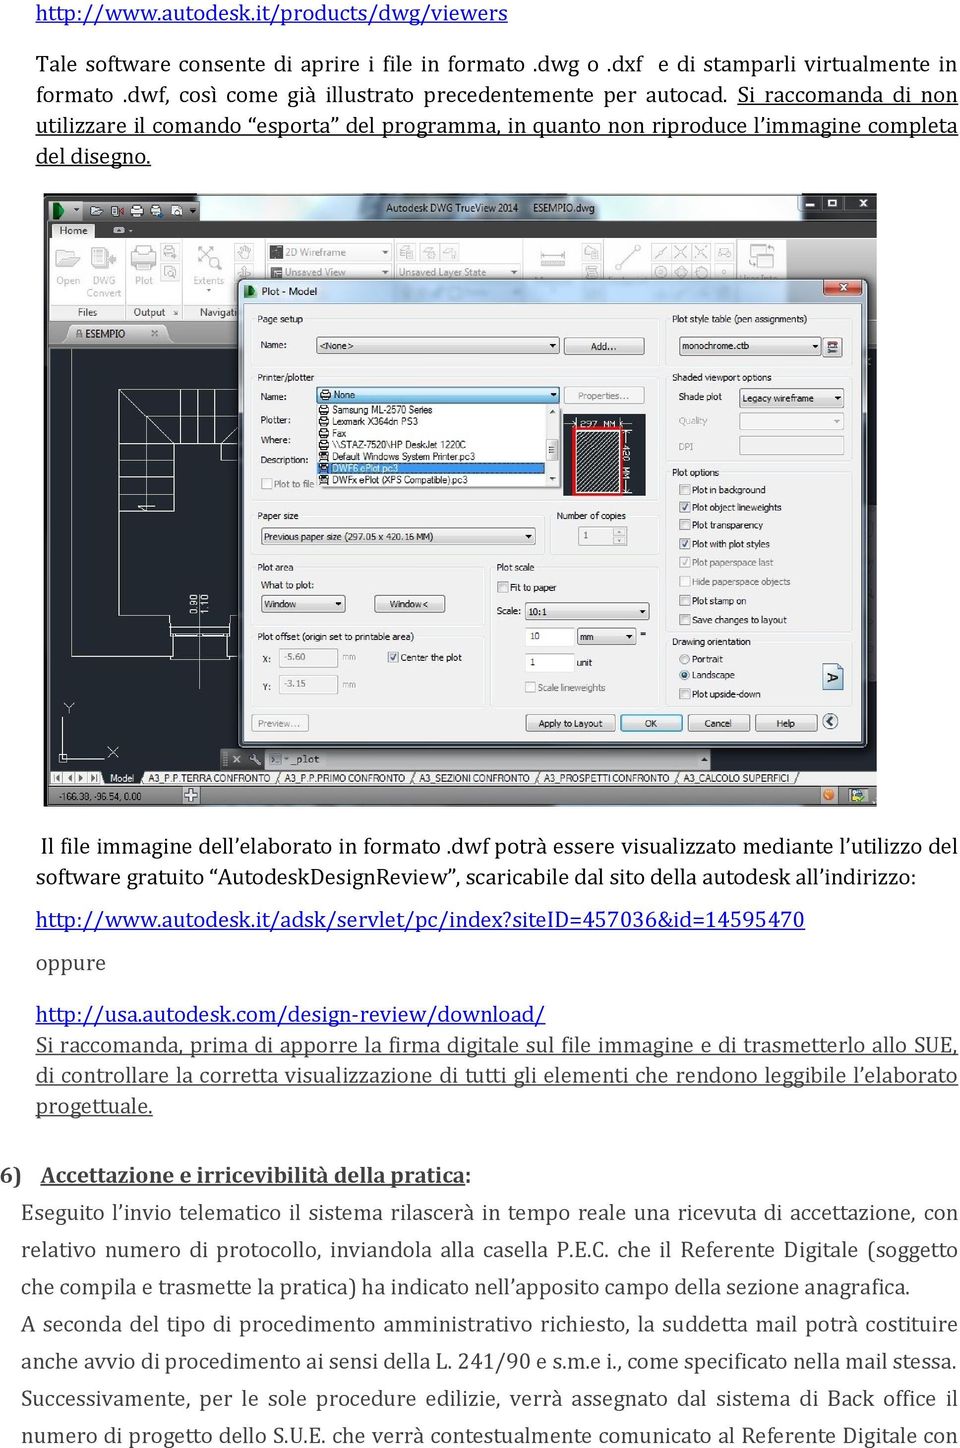 Il file immagine dell elaborato in formato.dwf potrà essere visualizzato mediante l utilizzo del software gratuito AutodeskDesignReview, scaricabile dal sito della autodesk all indirizzo: http://www.